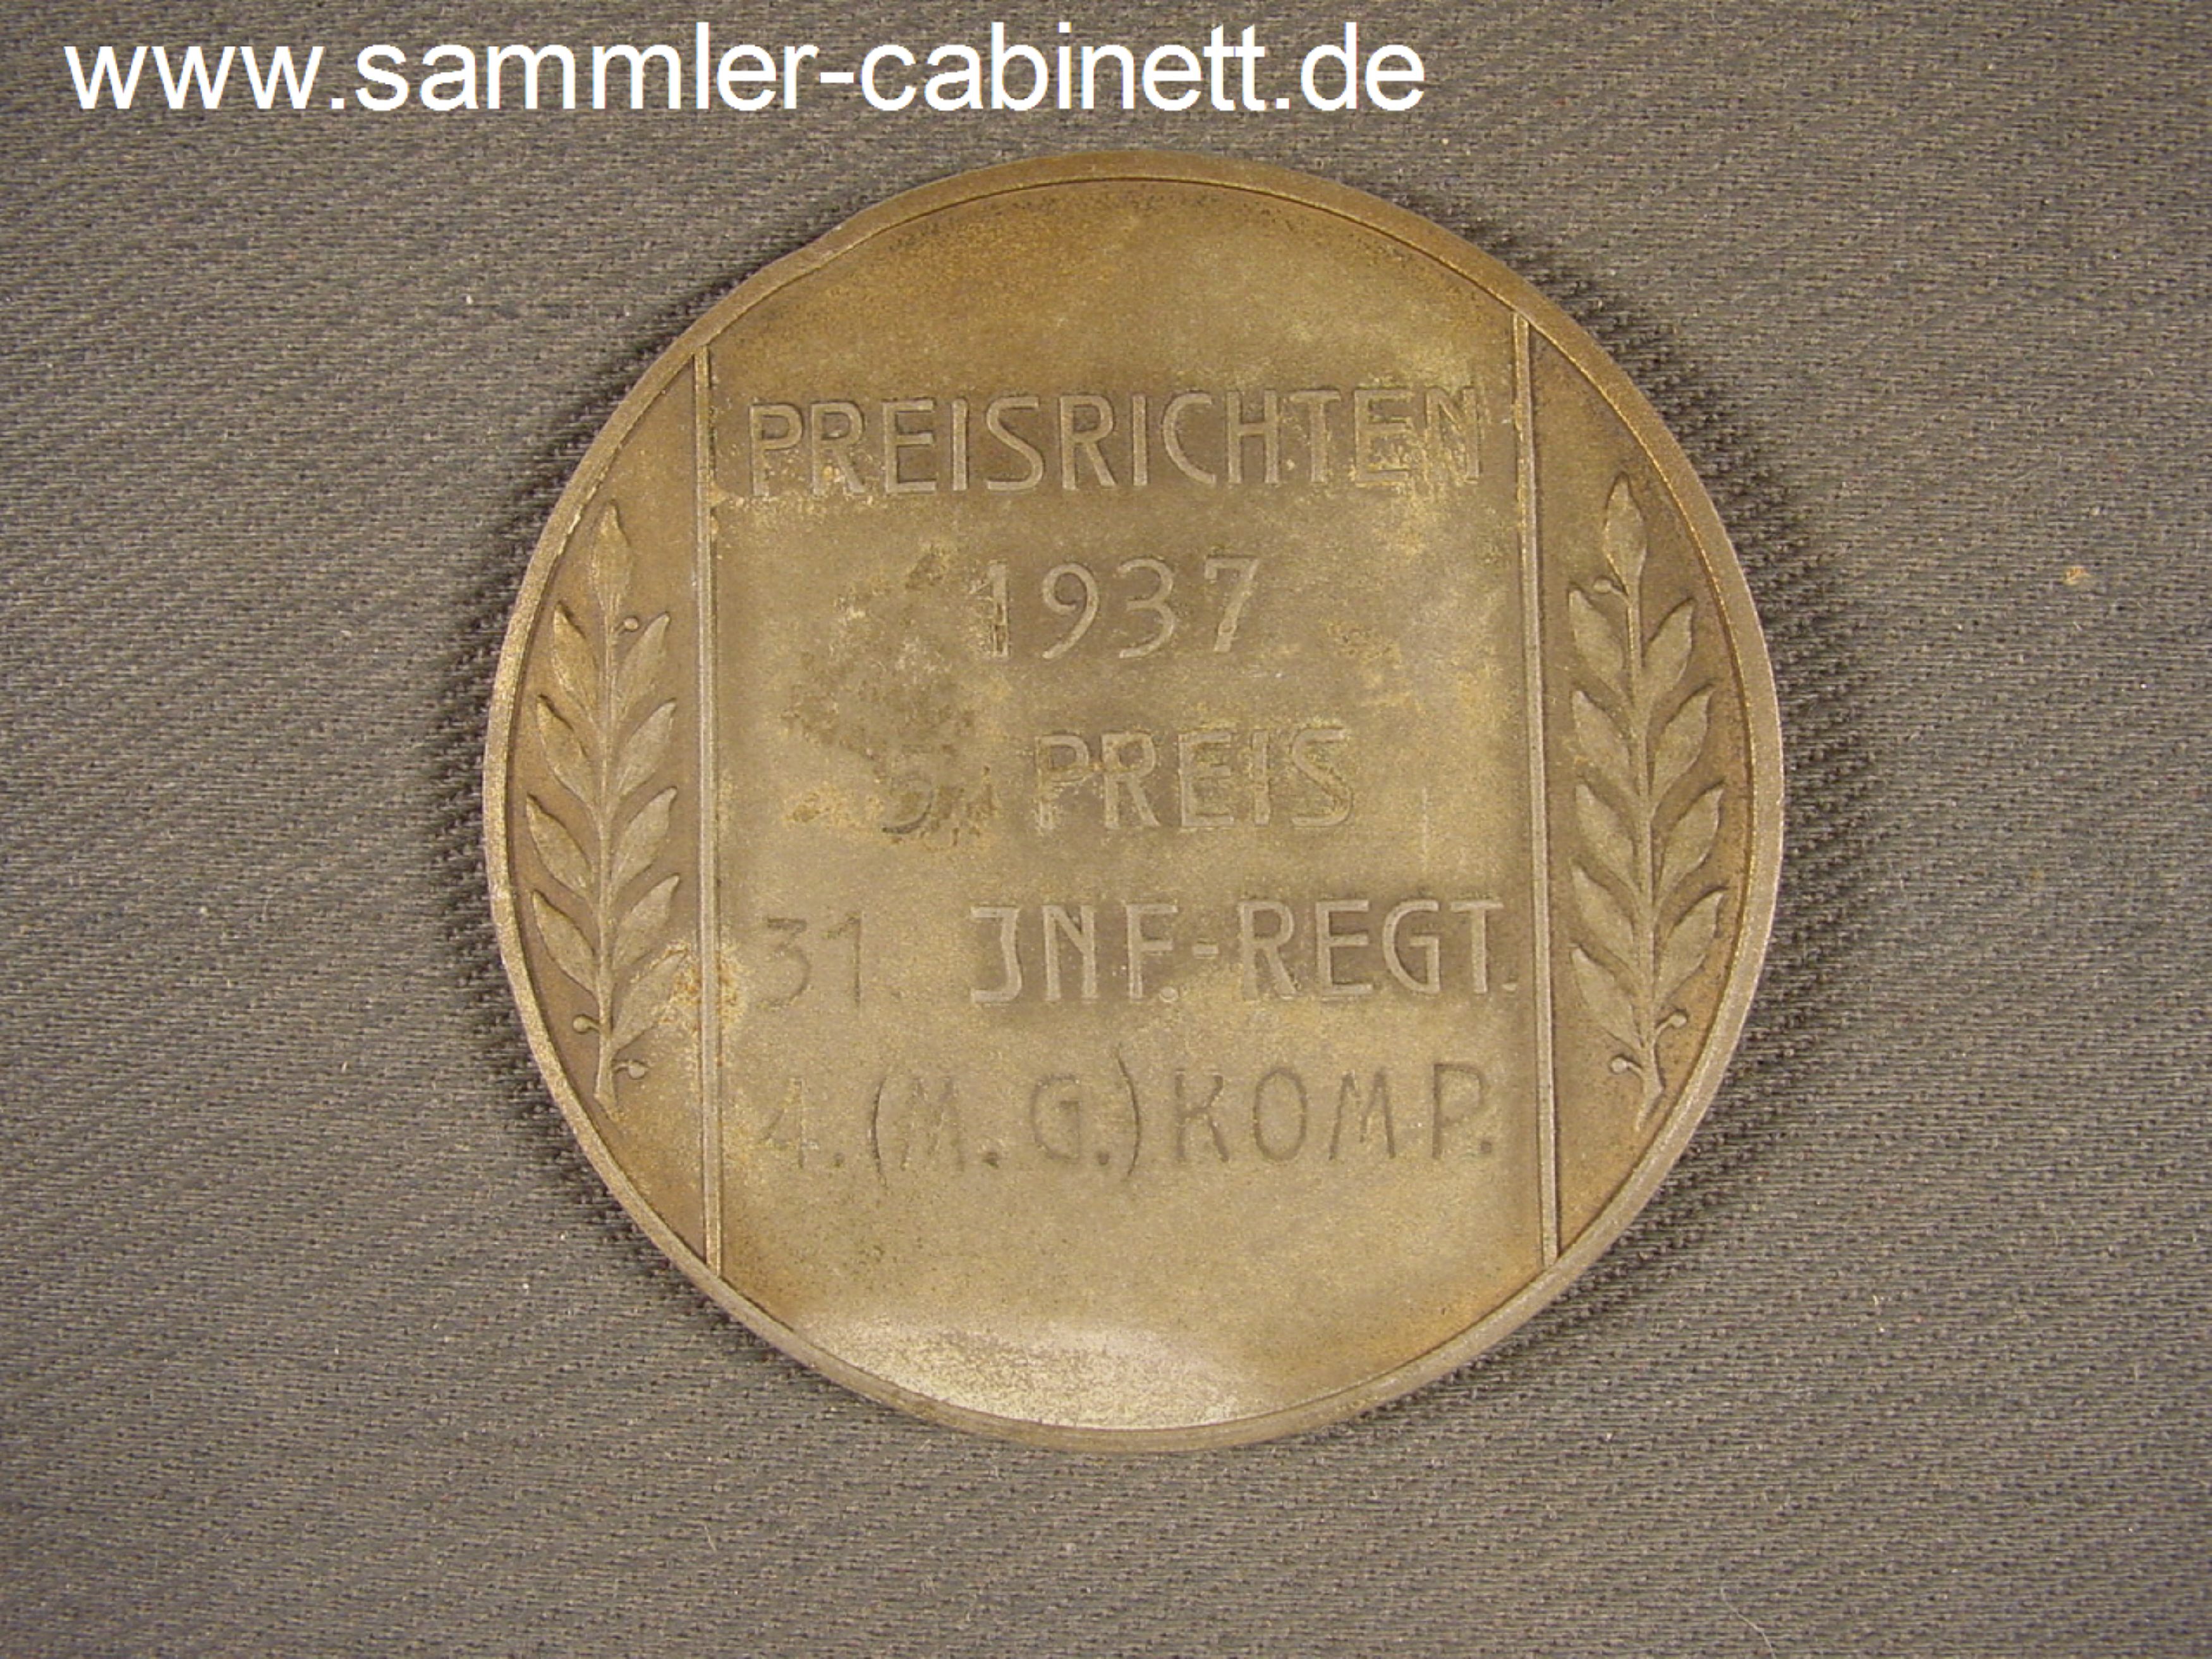 Medaille - PREISRICHTEN - 1937 - 5. Preis - Int. Regt. 31...